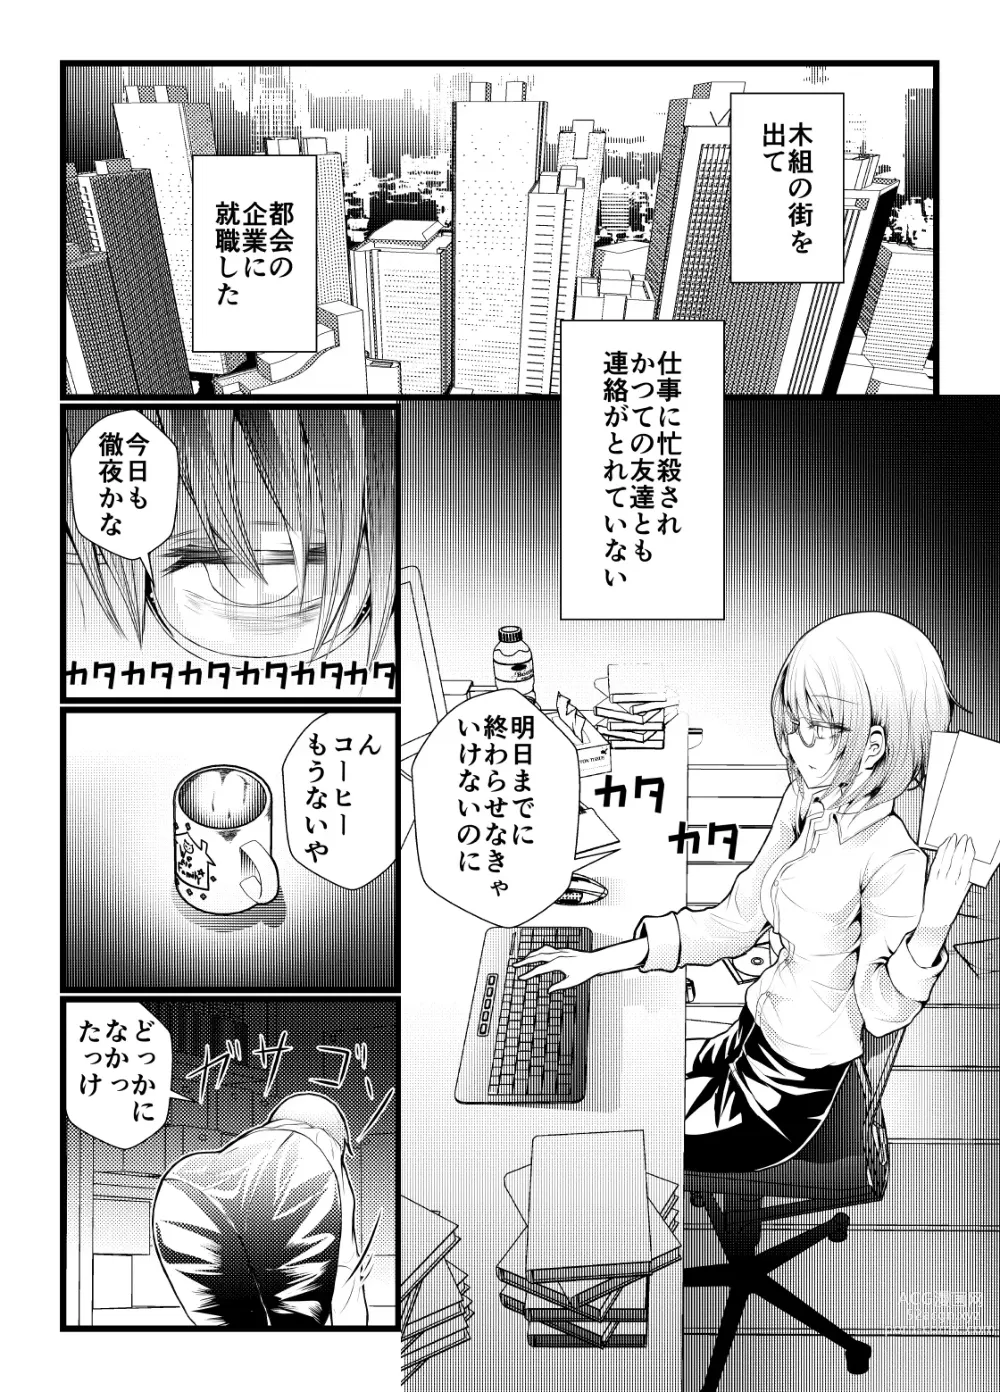 Page 1 of doujinshi Shachiku ni Natta Kokoa-chan ga Kigumi no Machi ni Kaeru Manga